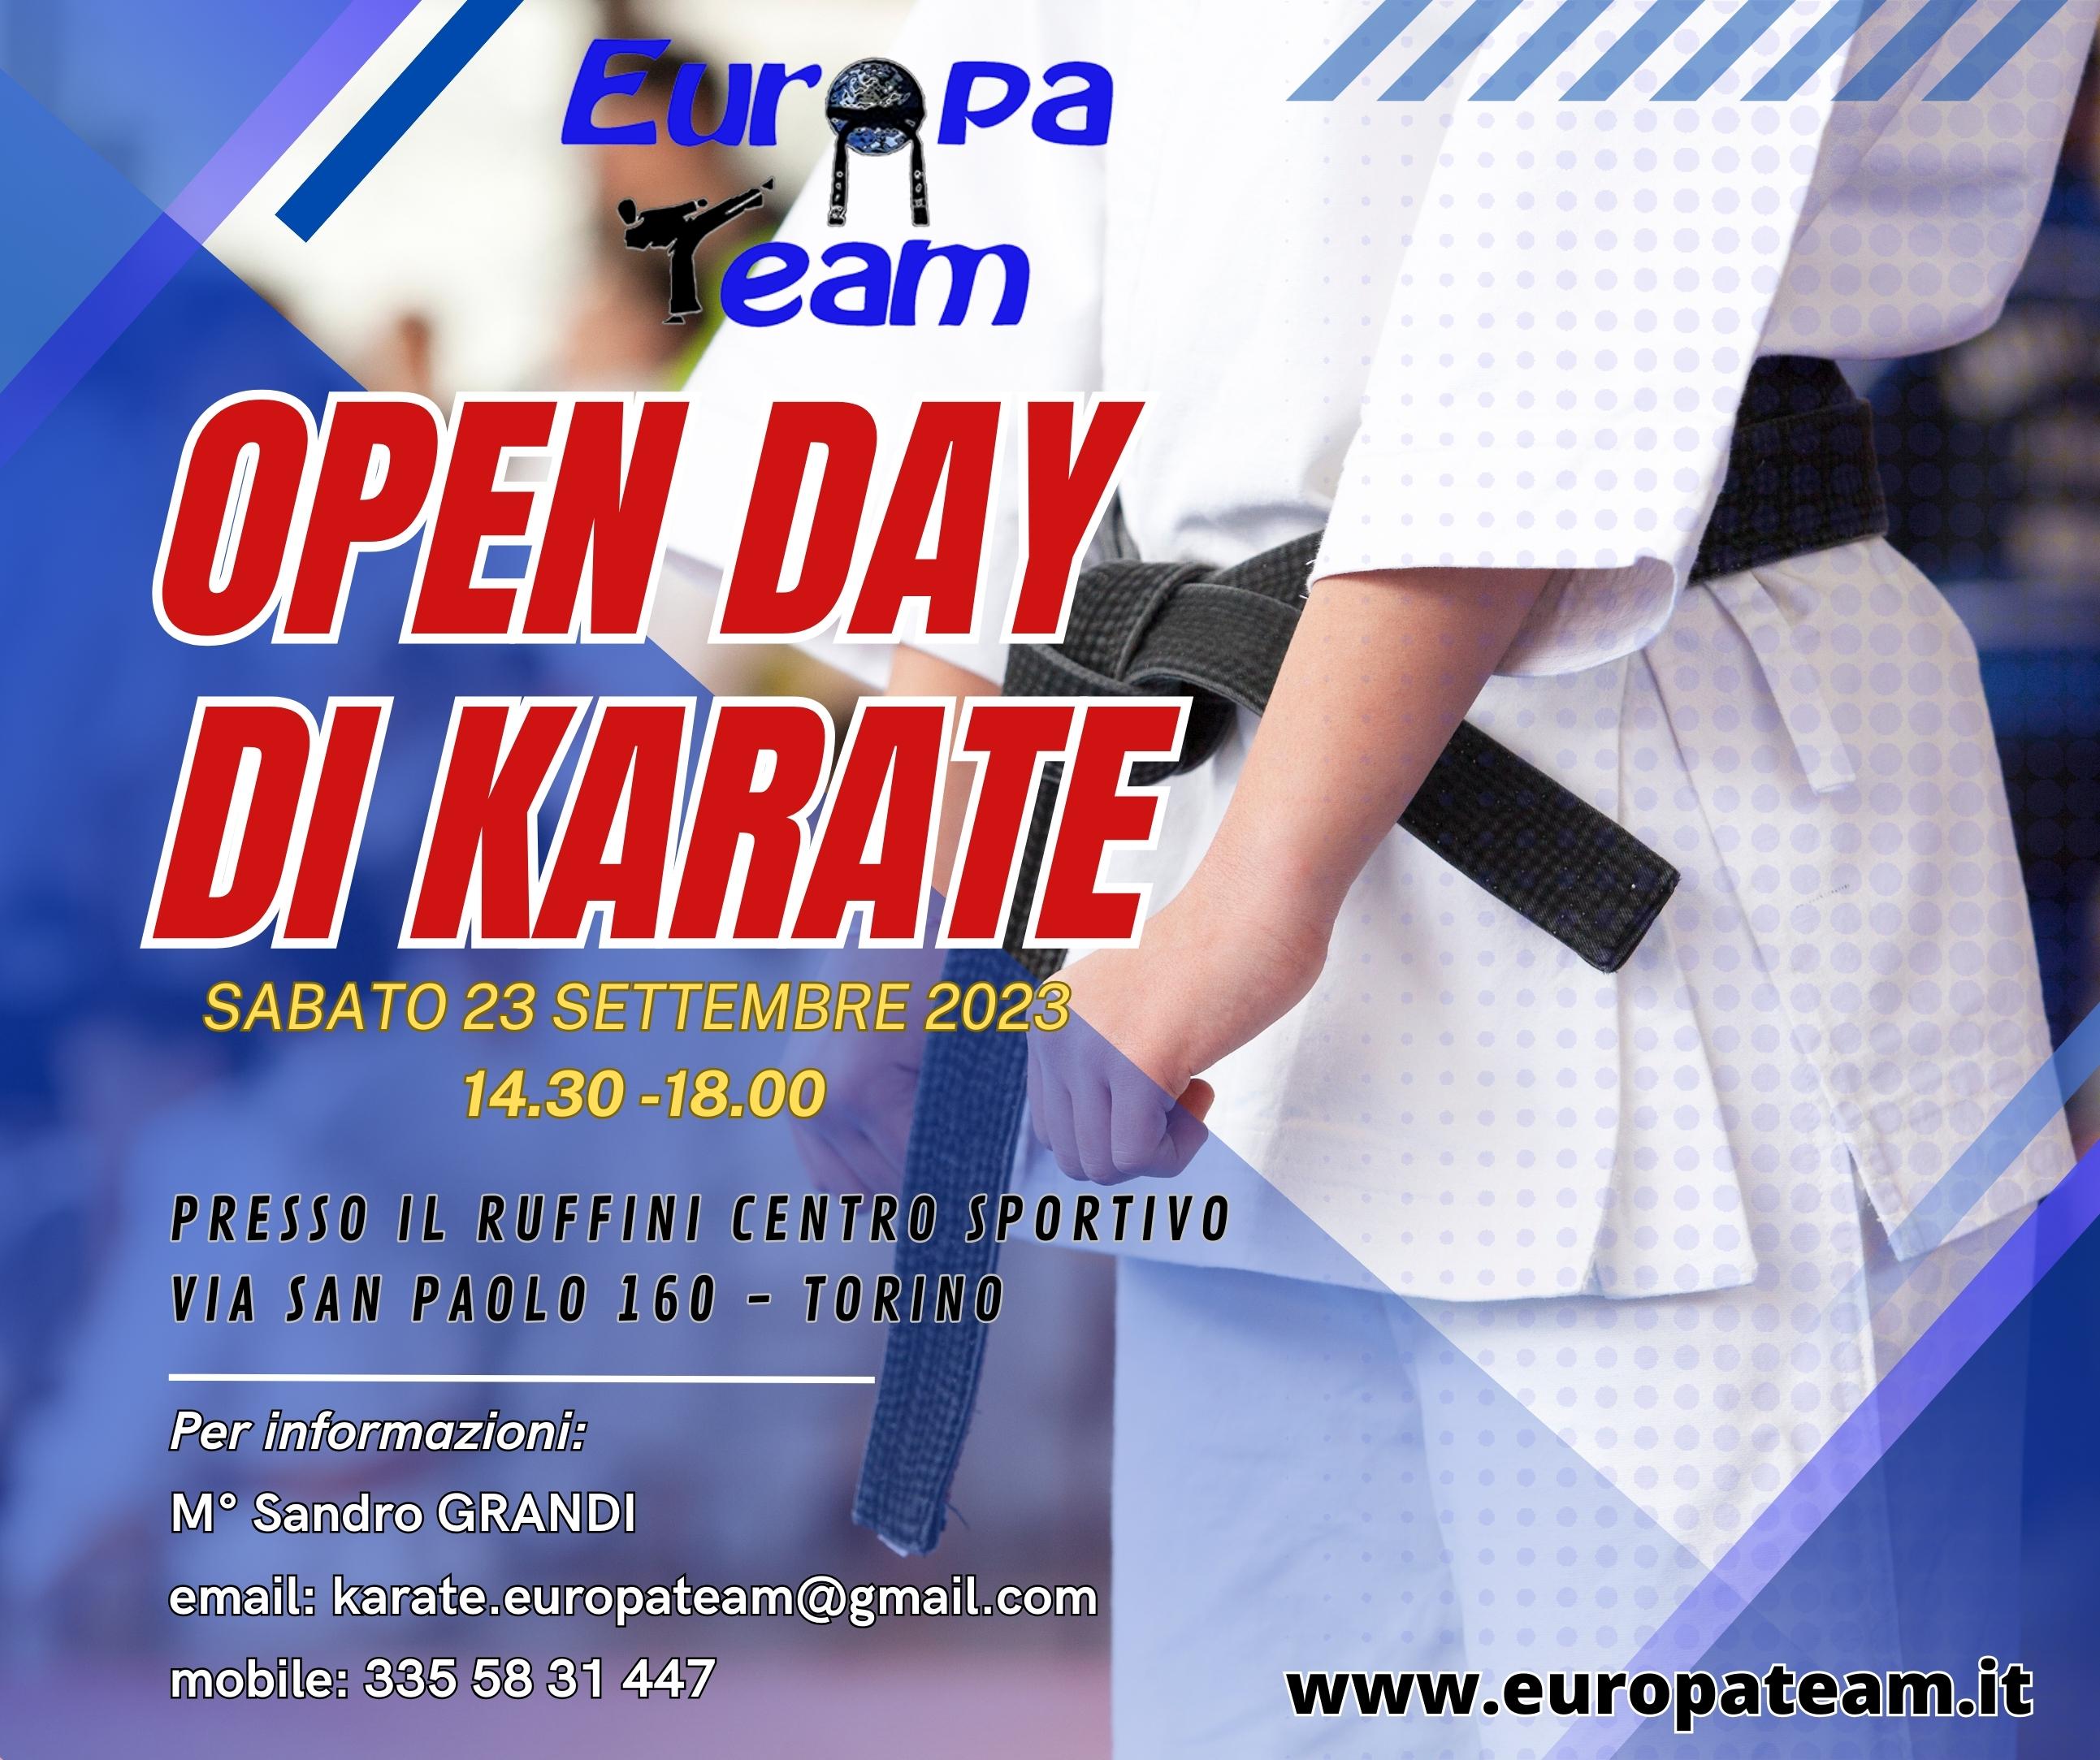 Vieni a scoprire il mondo del karate!